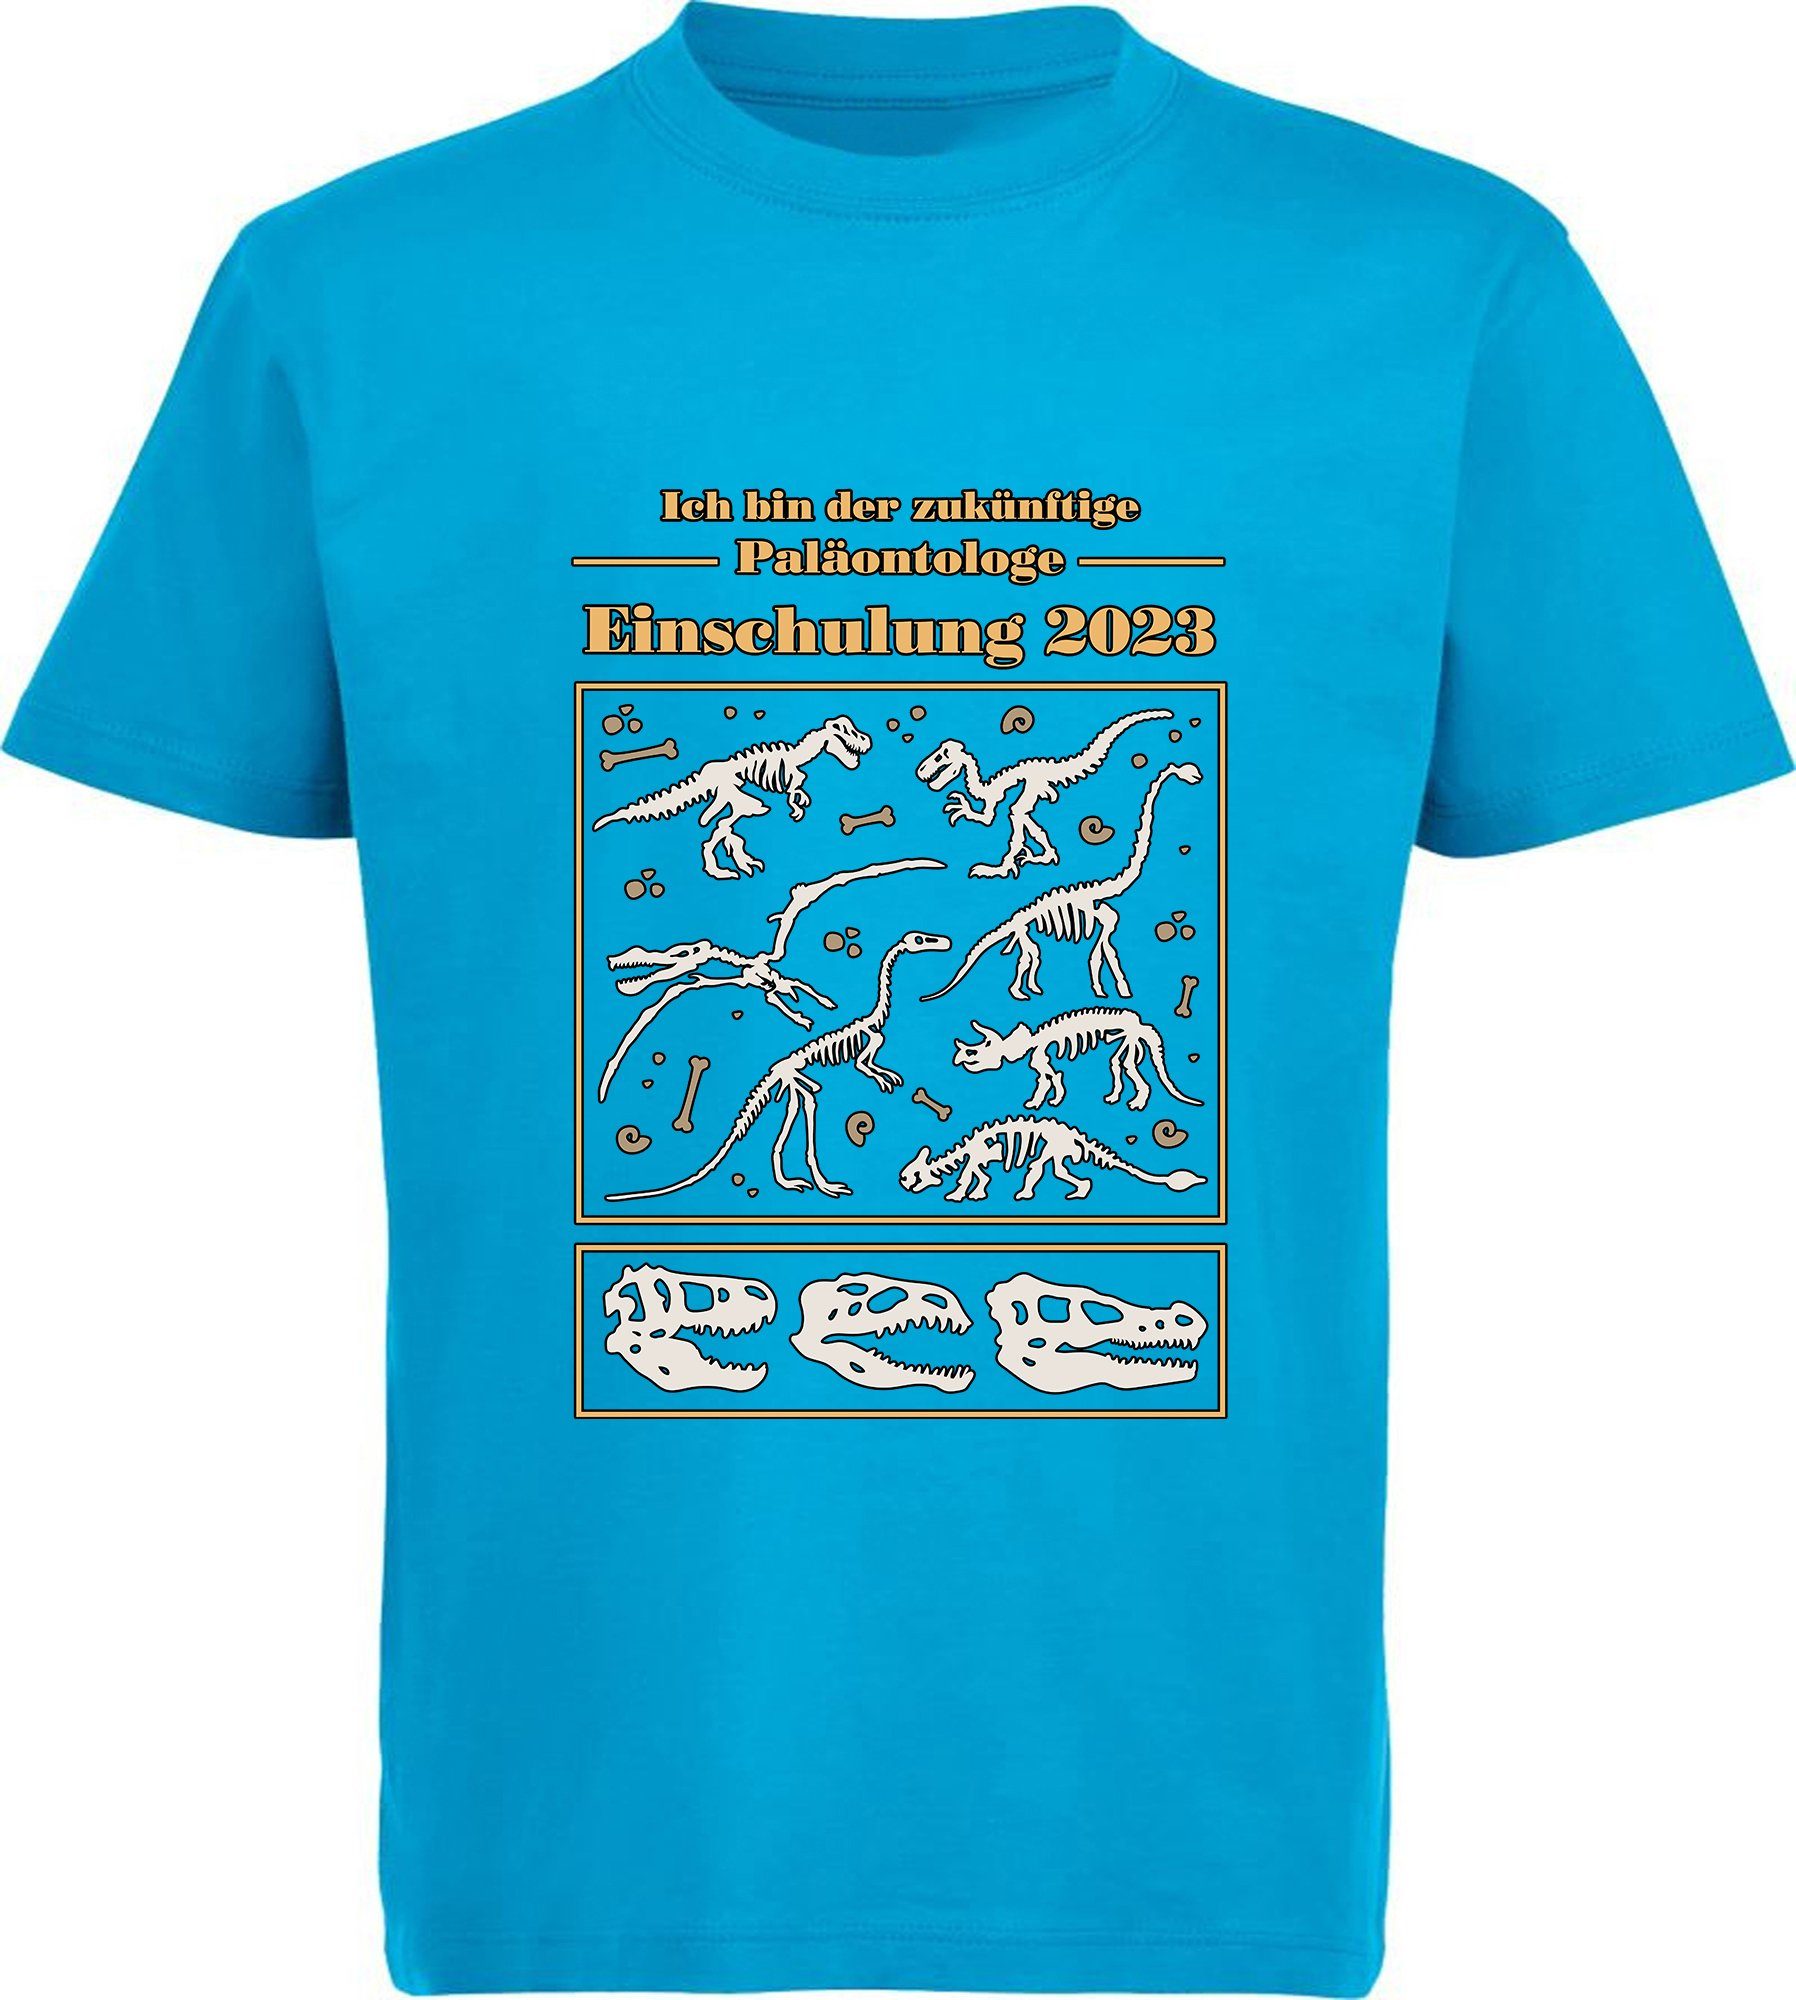 MyDesign24 Print-Shirt bedrucktes Kinder T-Shirt zukünftige Paläontologe mit Dino Skeletten Baumwollshirt Einschulung 2023, schwarz, weiß, rot, blau, i36 aqua blau